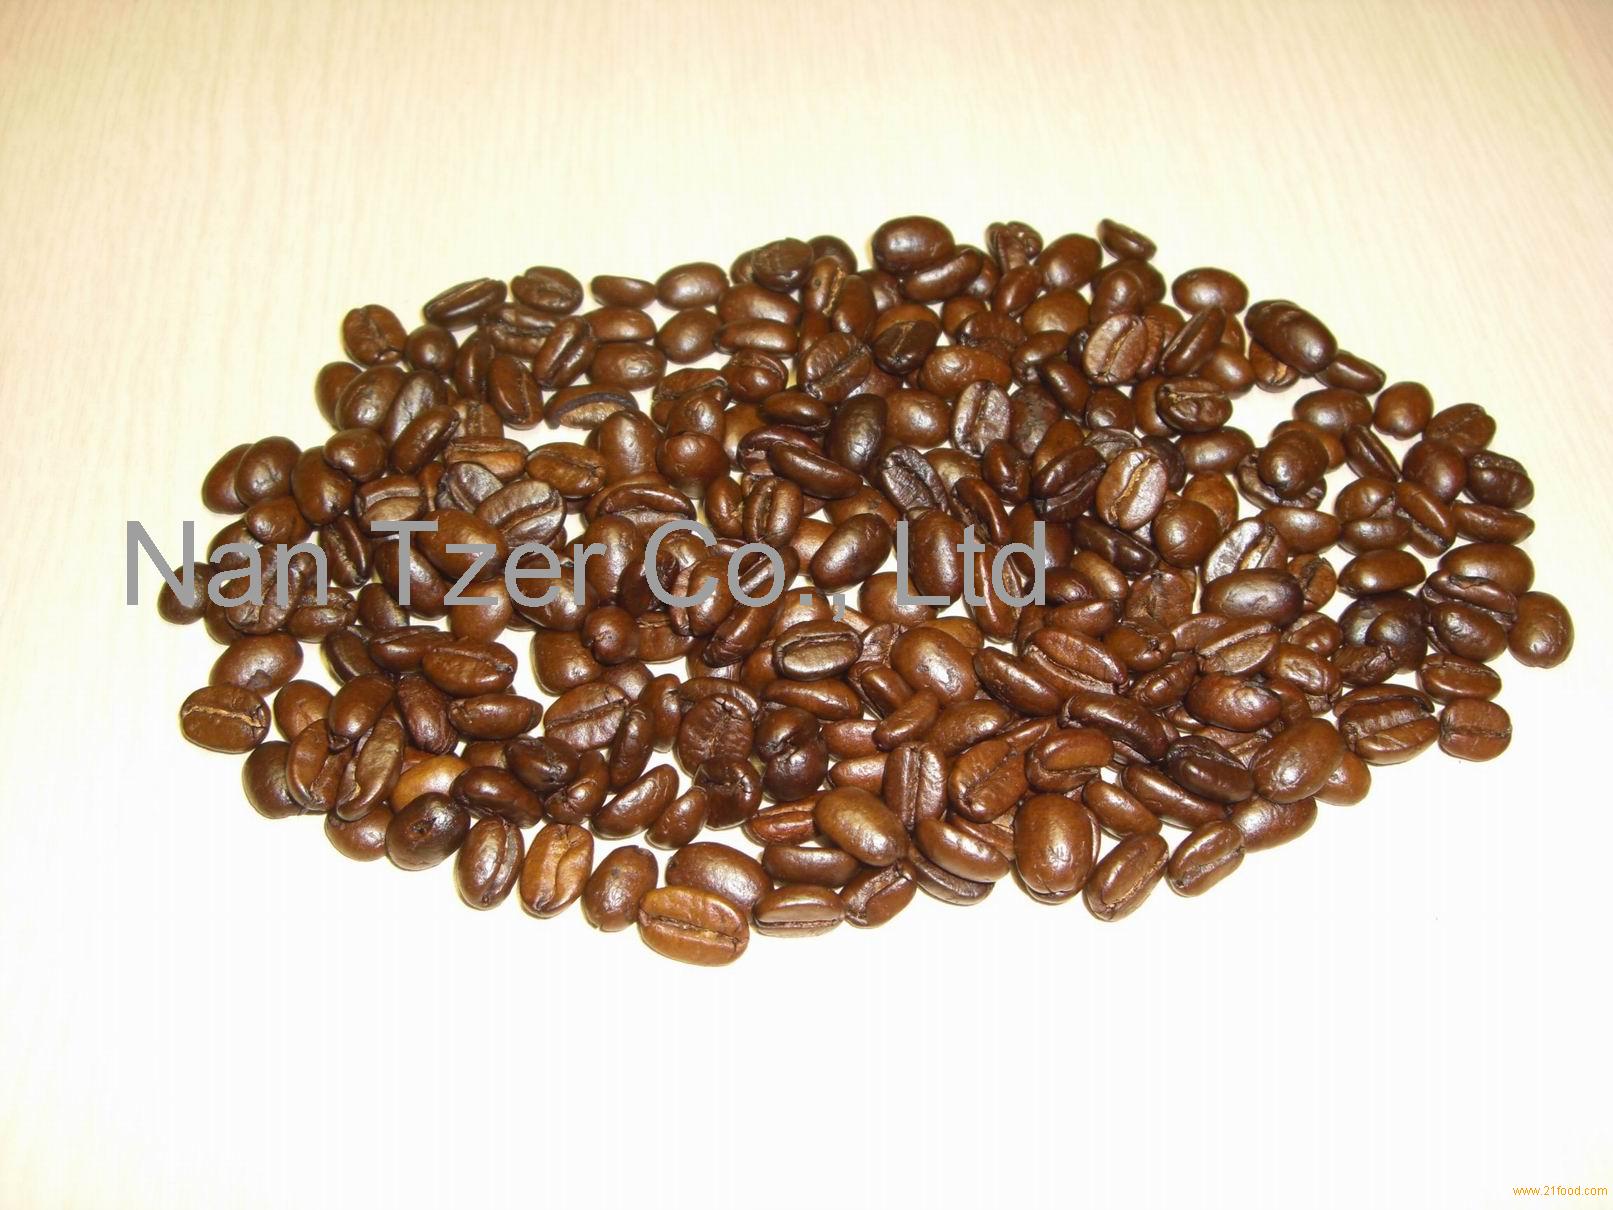 sumatra mandheling whole bean coffee